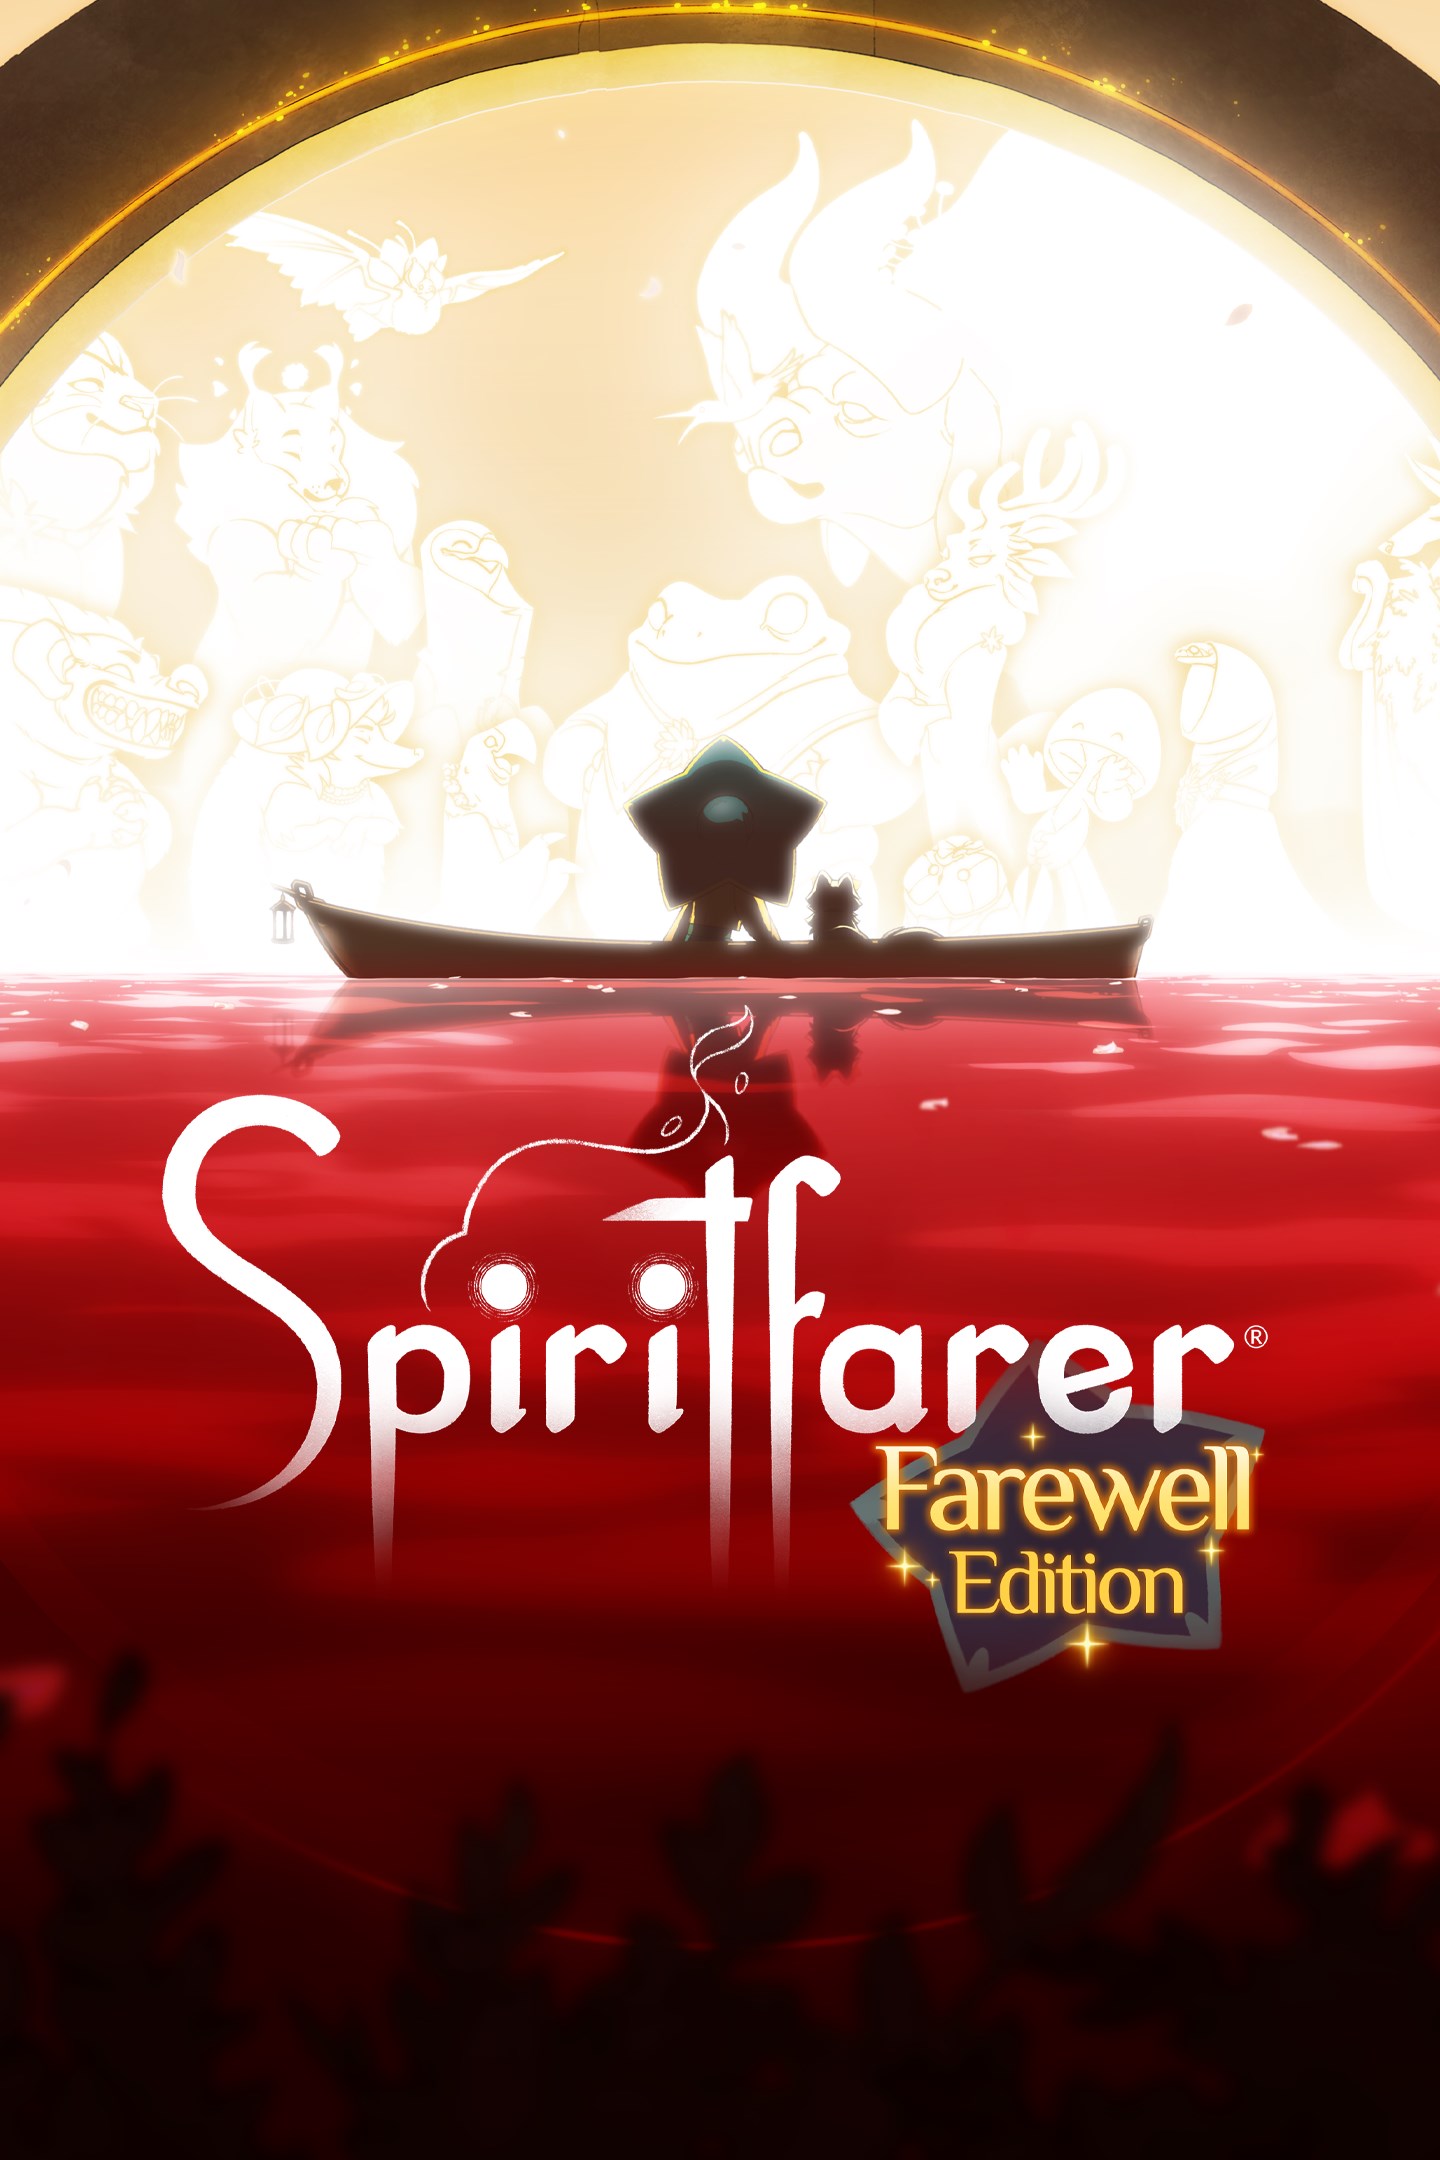 Spiritfarer: Edición Farewell